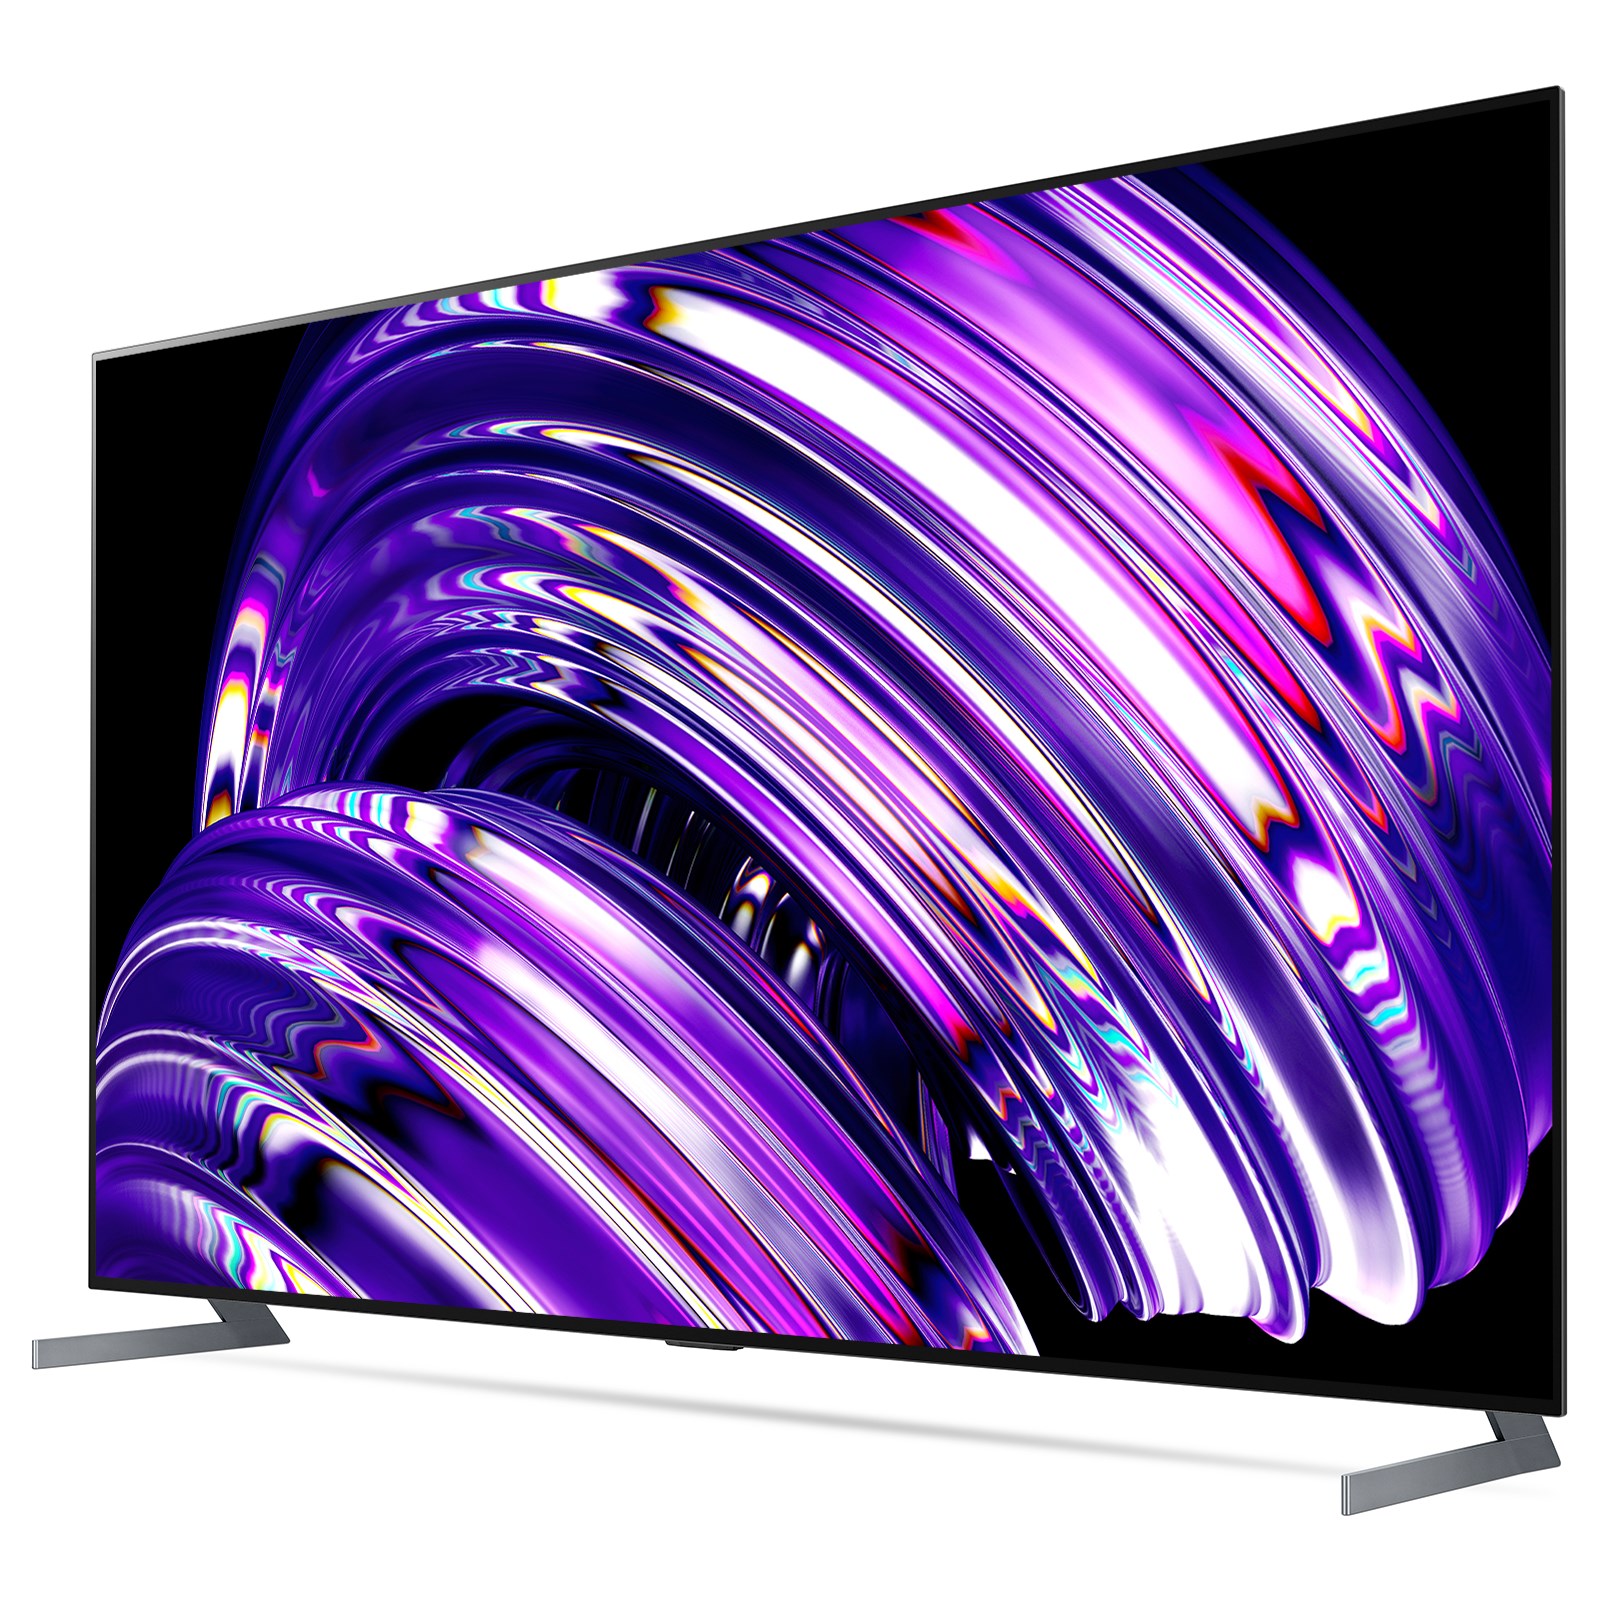 2022 serisi LG TV’ler Türkiye’de! İşte fiyatı ve özellikleri